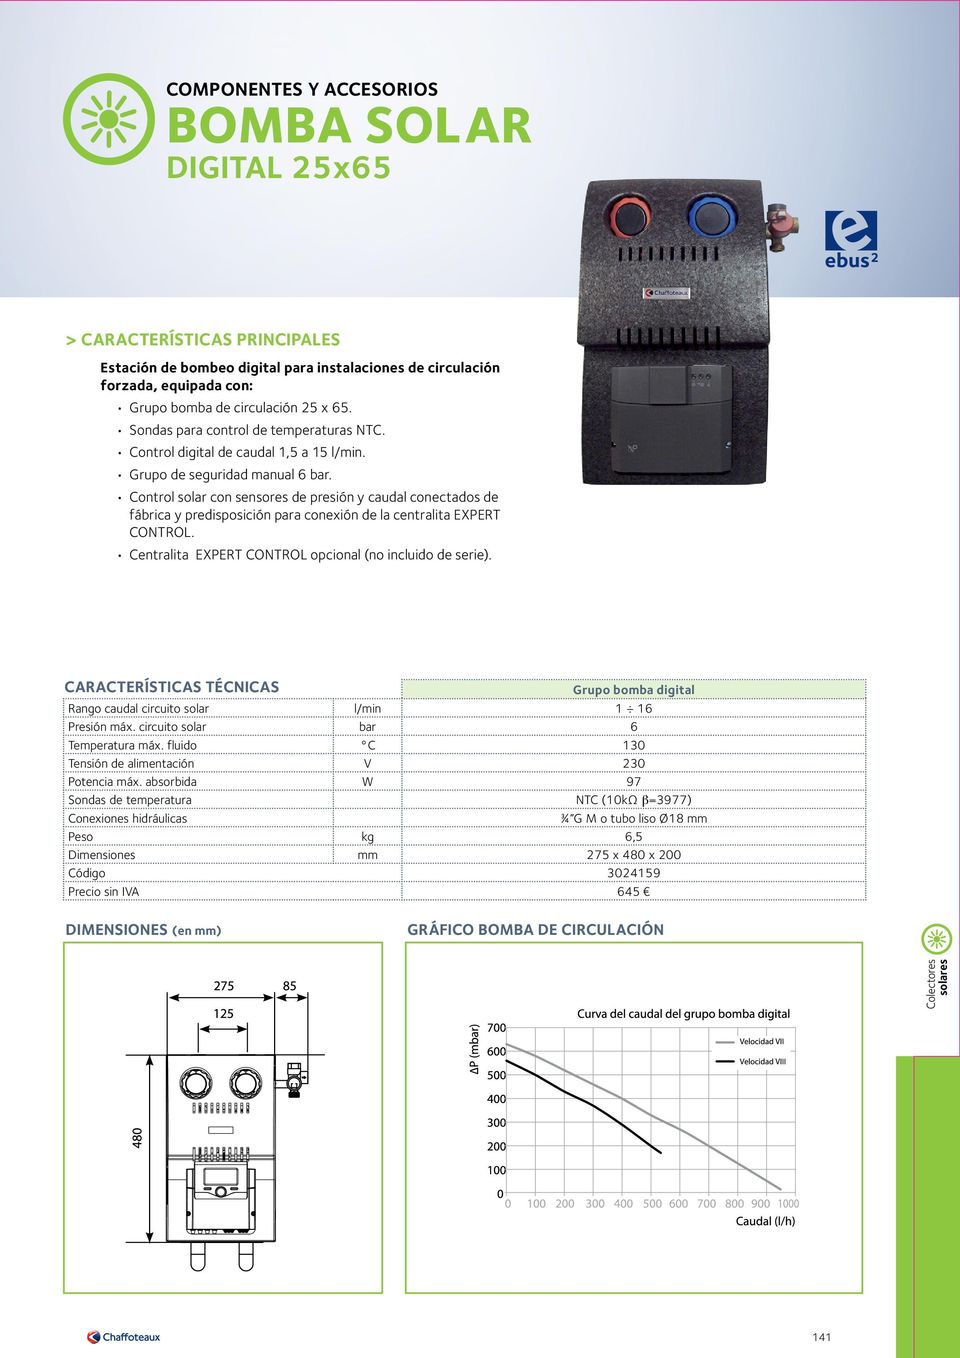 Control solar con sensores de presión y caudal conectados de fábrica y predisposición para conexión de la centralita EXPERT CONOL. Centralita EXPERT CONOL opcional (no incluido de serie).